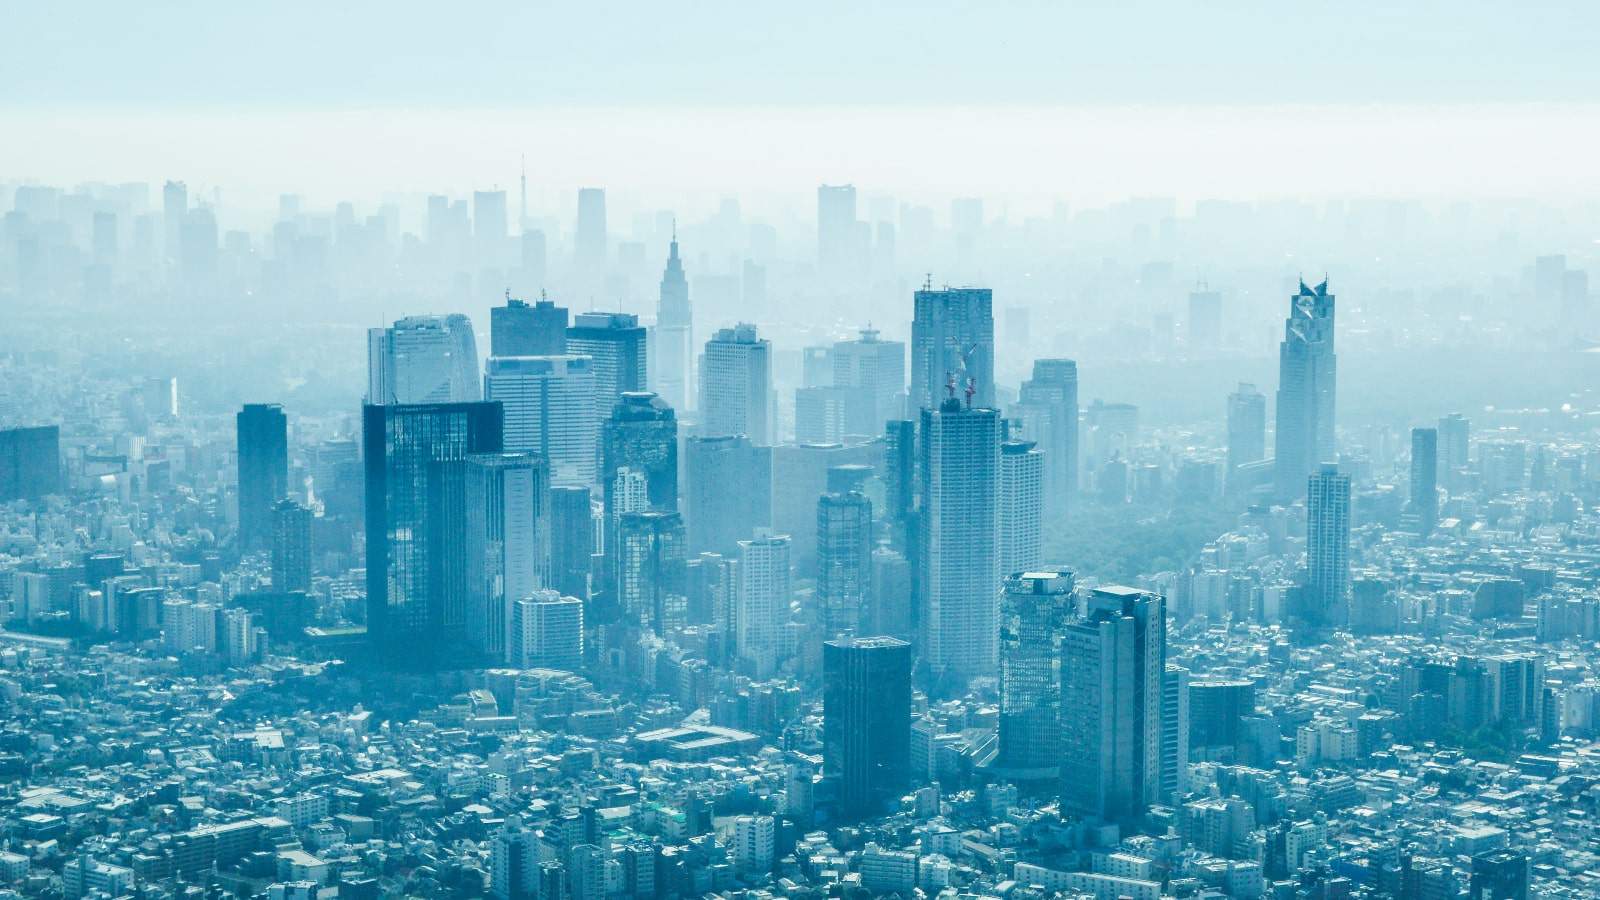 脱ハンコの先｢都市のデジタル化｣で来る大変化 日本で進む｢スマートシティ｣実現への取り組み | 政策 | 東洋経済オンライン